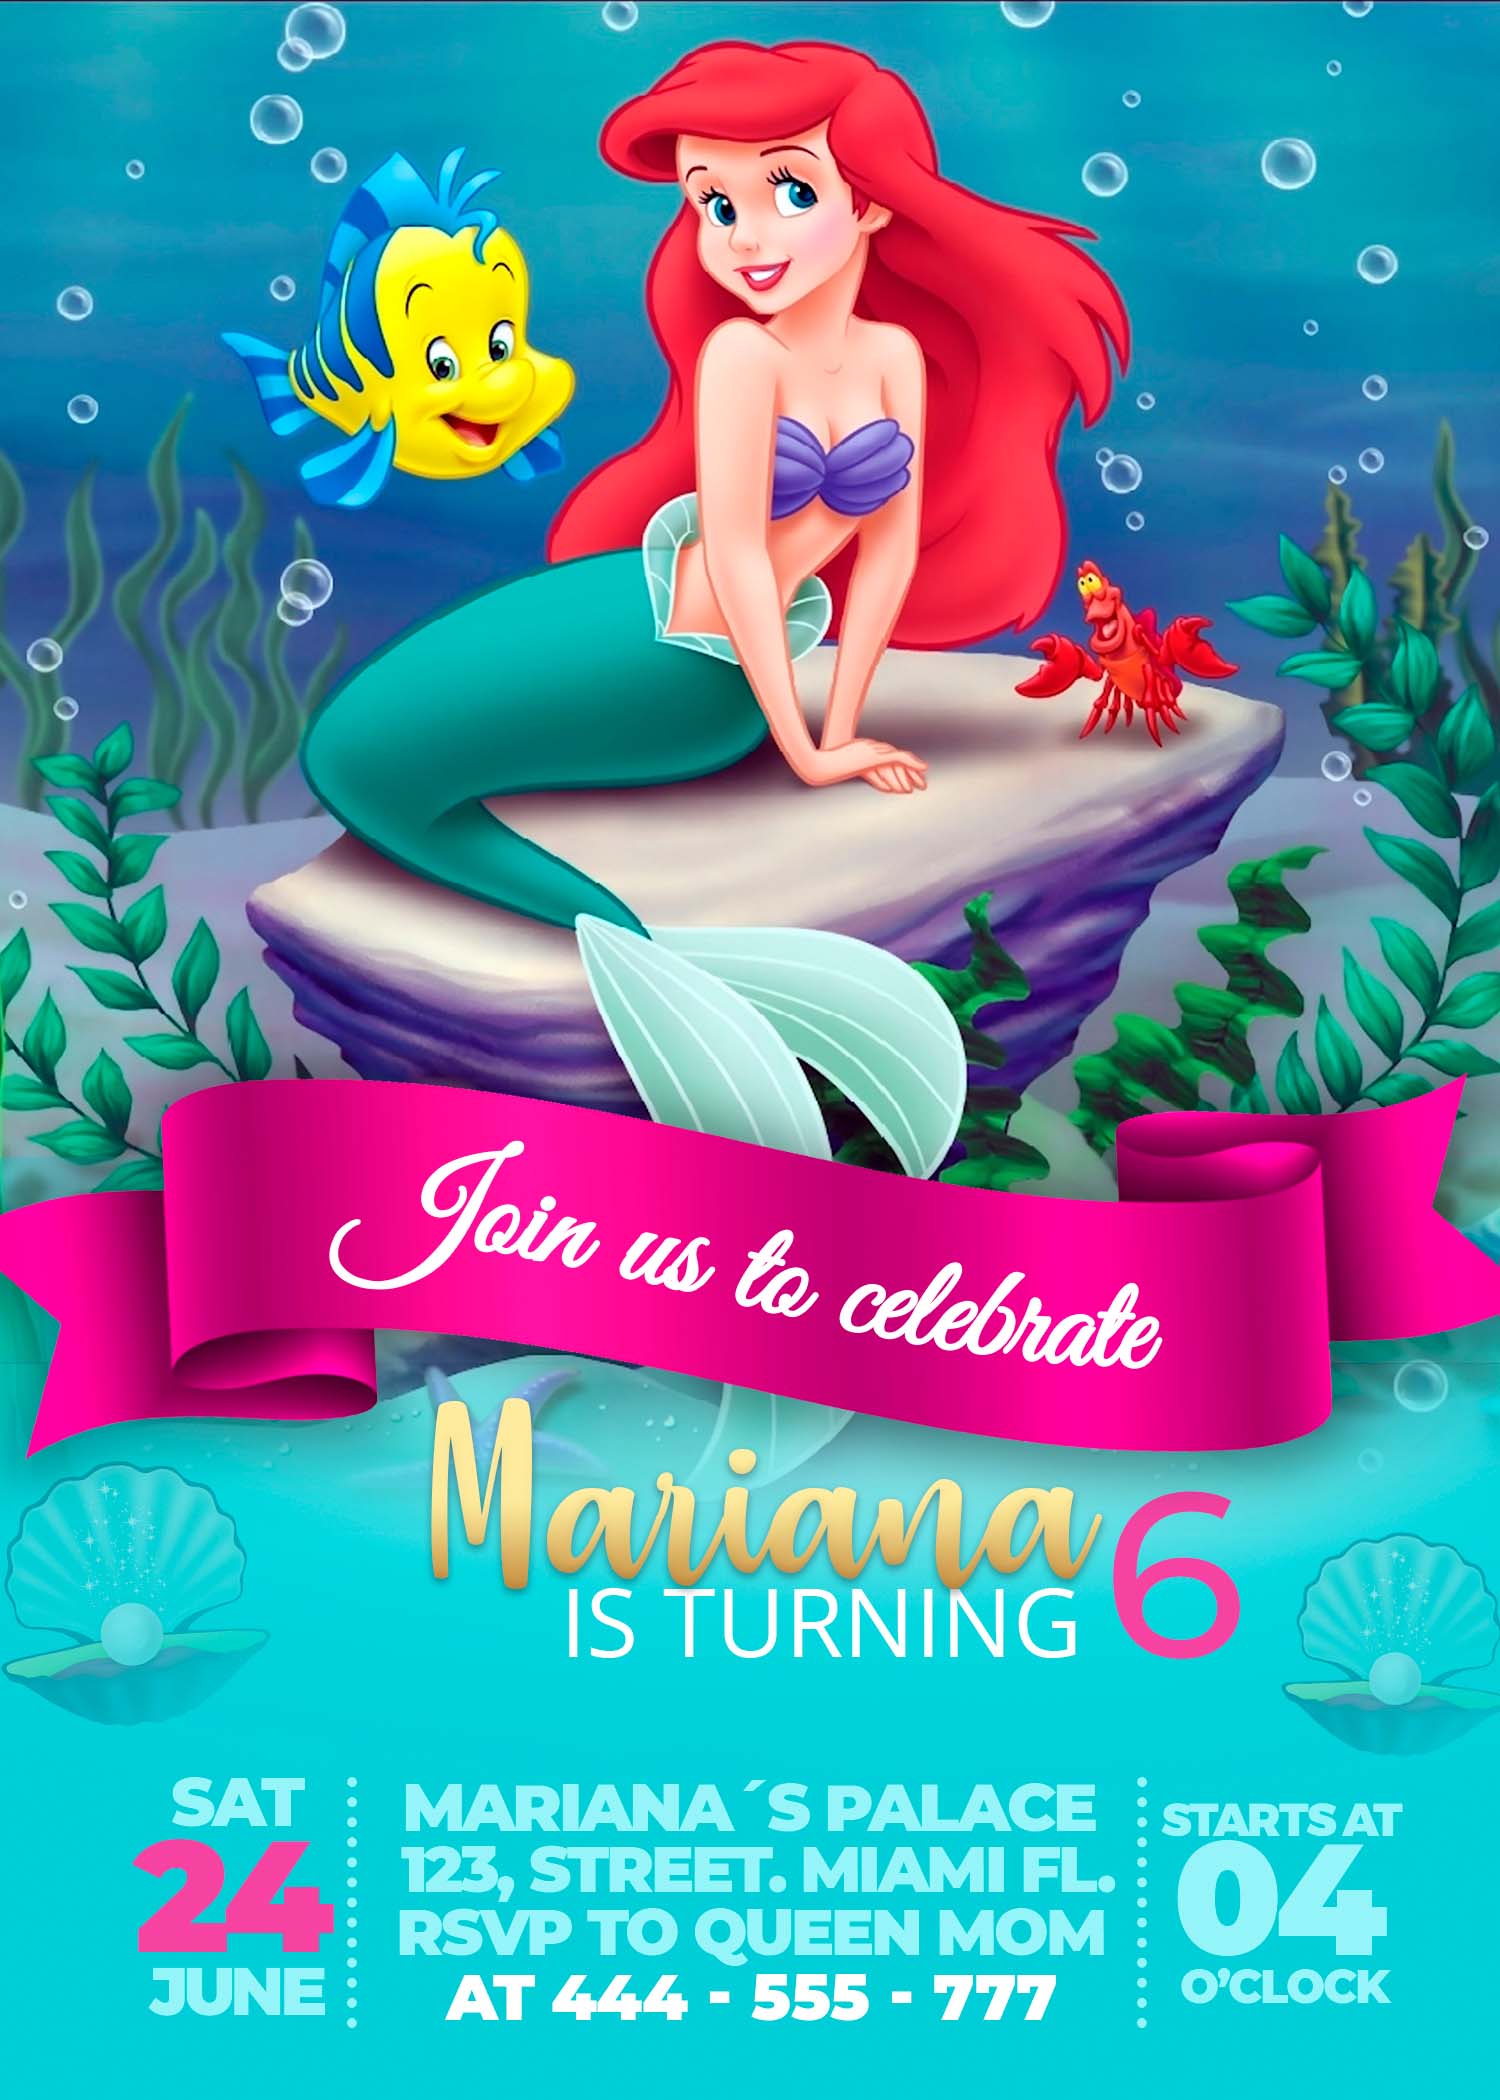 little-mermaid-birthday-invitation-editable-template-lupon-gov-ph